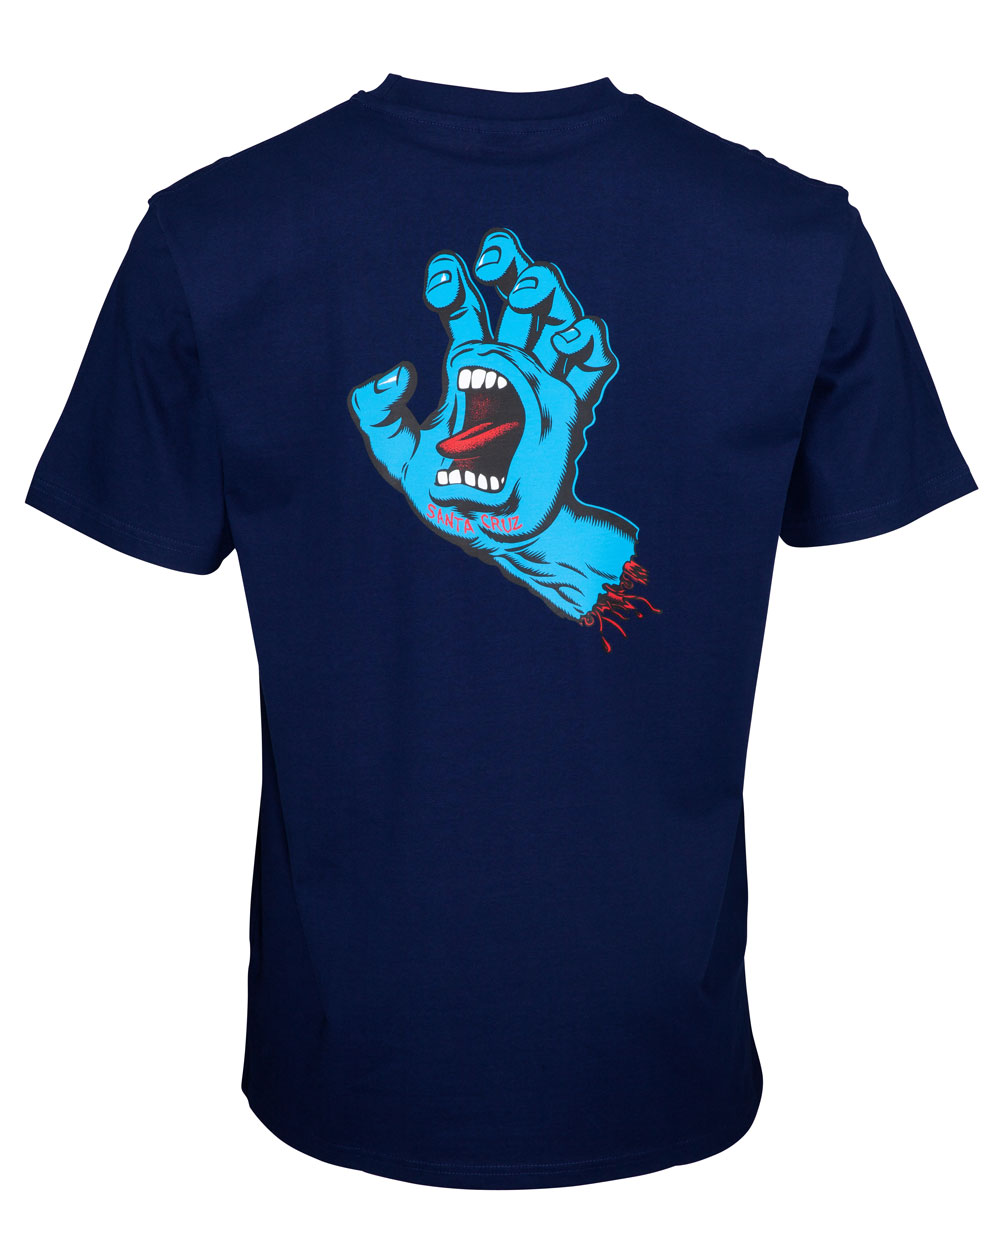 Santa Cruz Herren T-Shirt Screaming Hand Chest Dark Navy